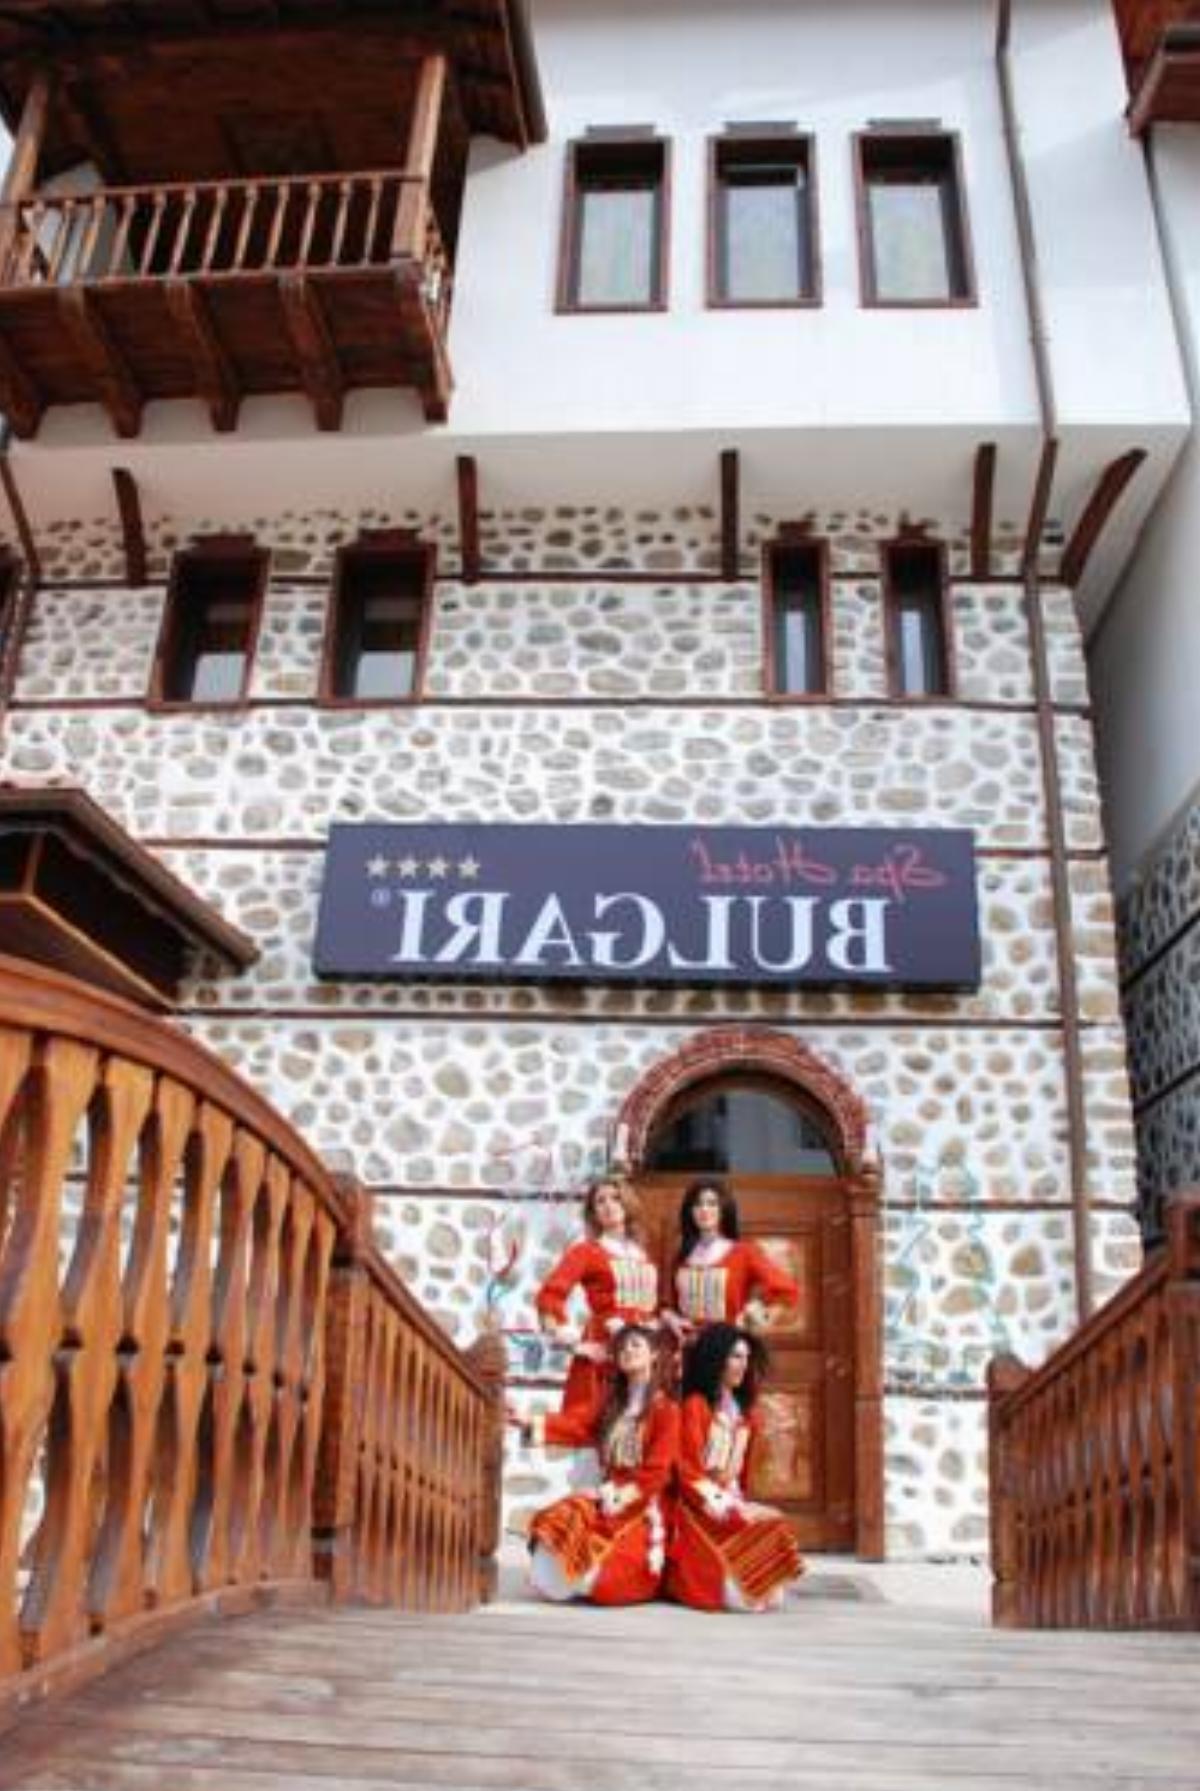 Bulgari Family Hotel